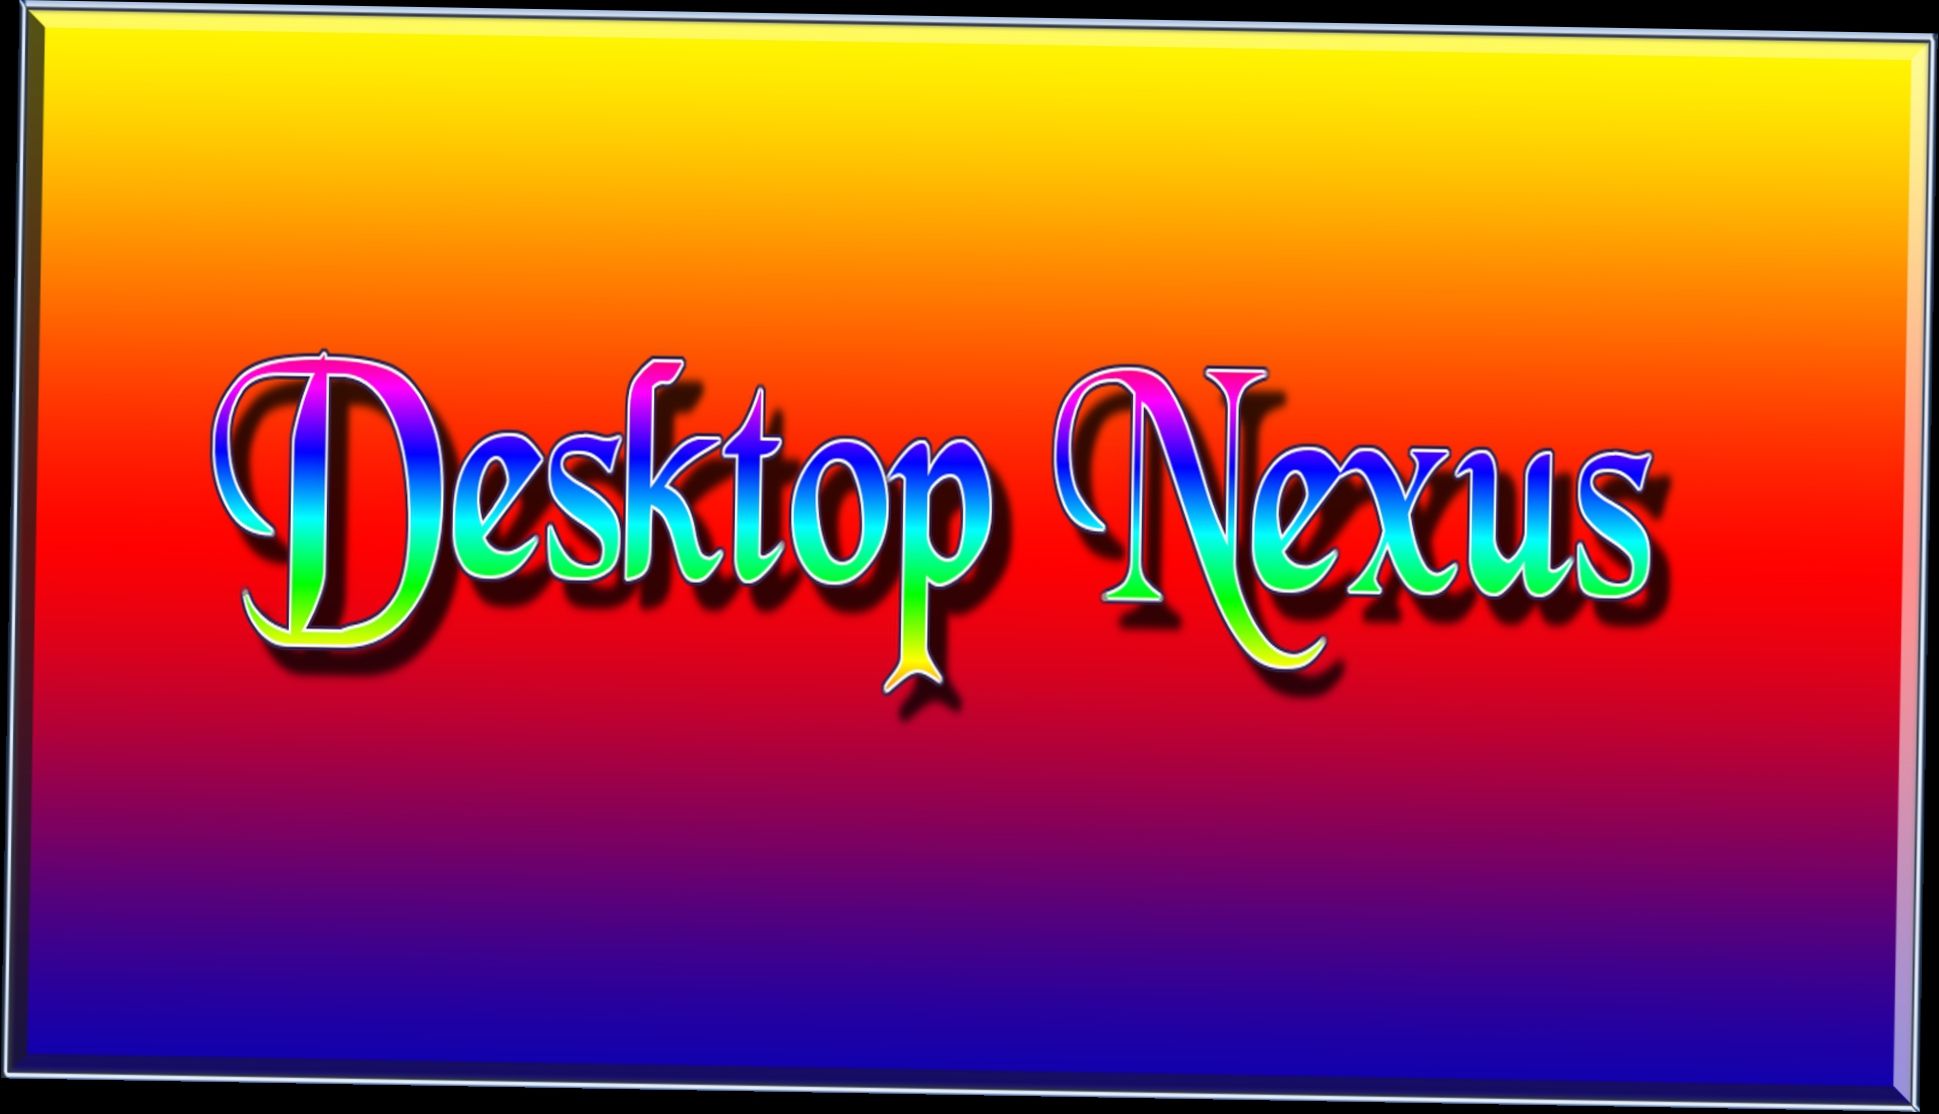 Nexus desktop wallpapers - 3 items